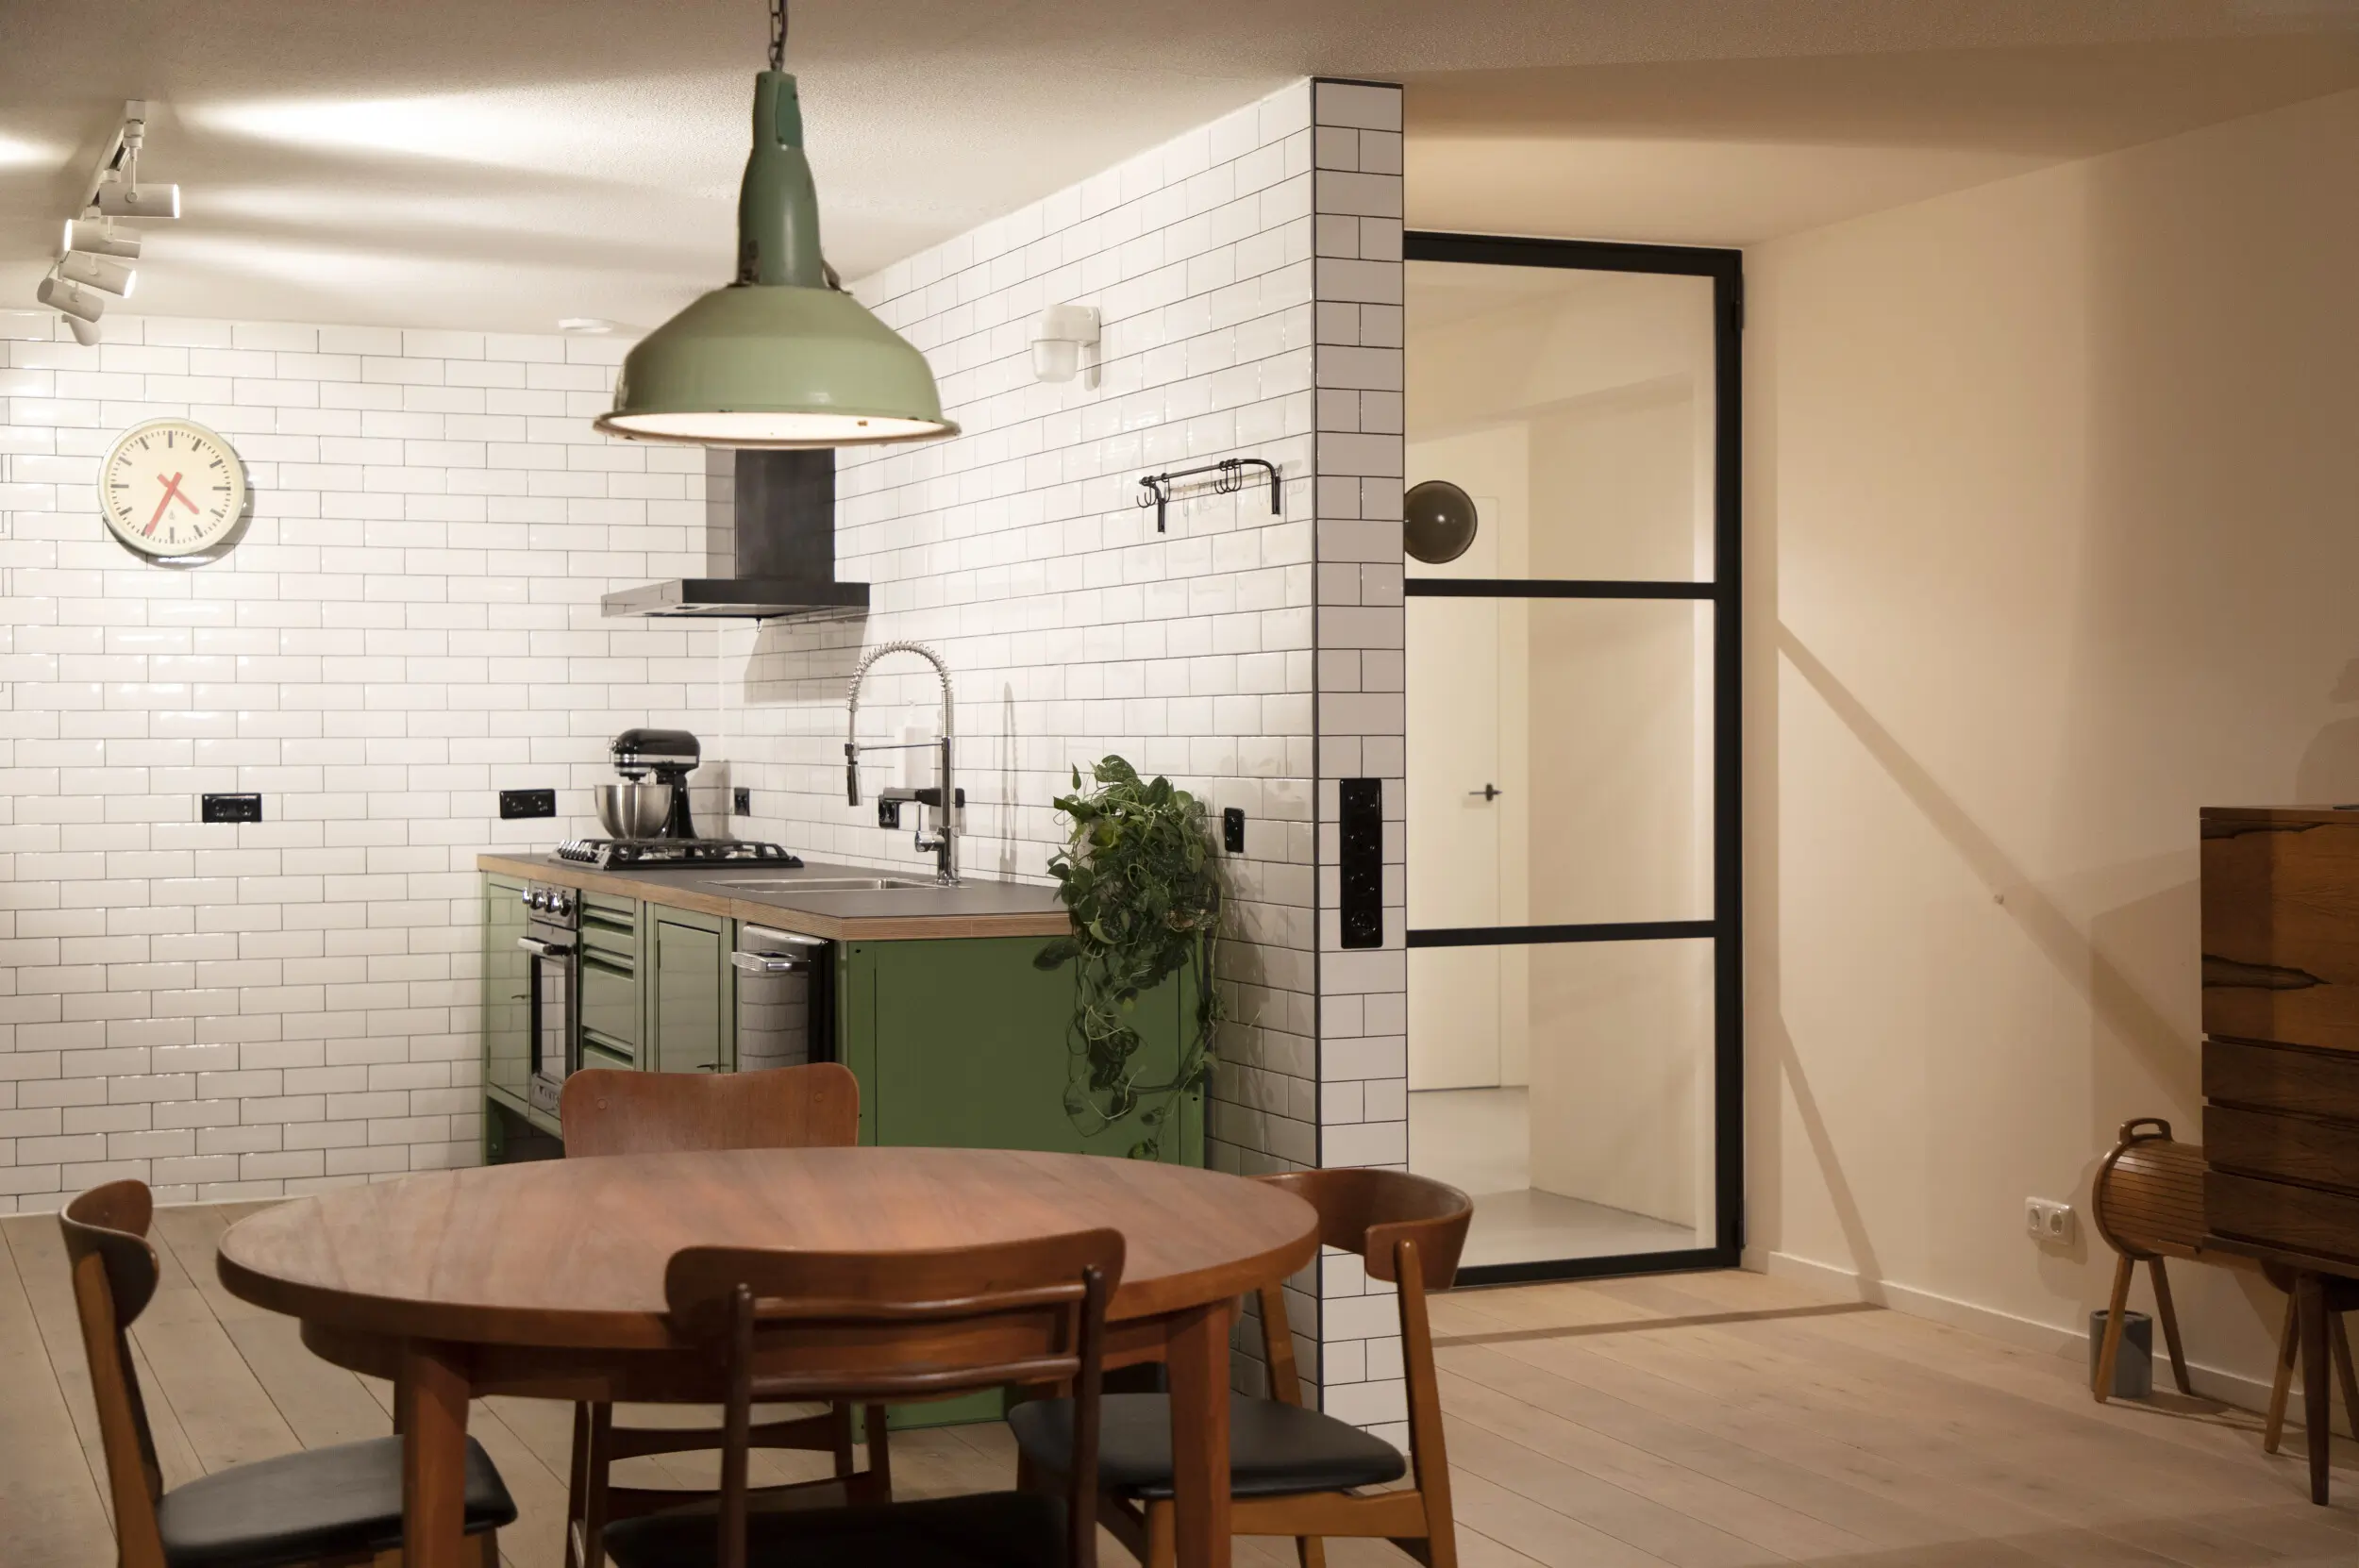 Industrial door, metro tiles. Open plan living room kitchen.